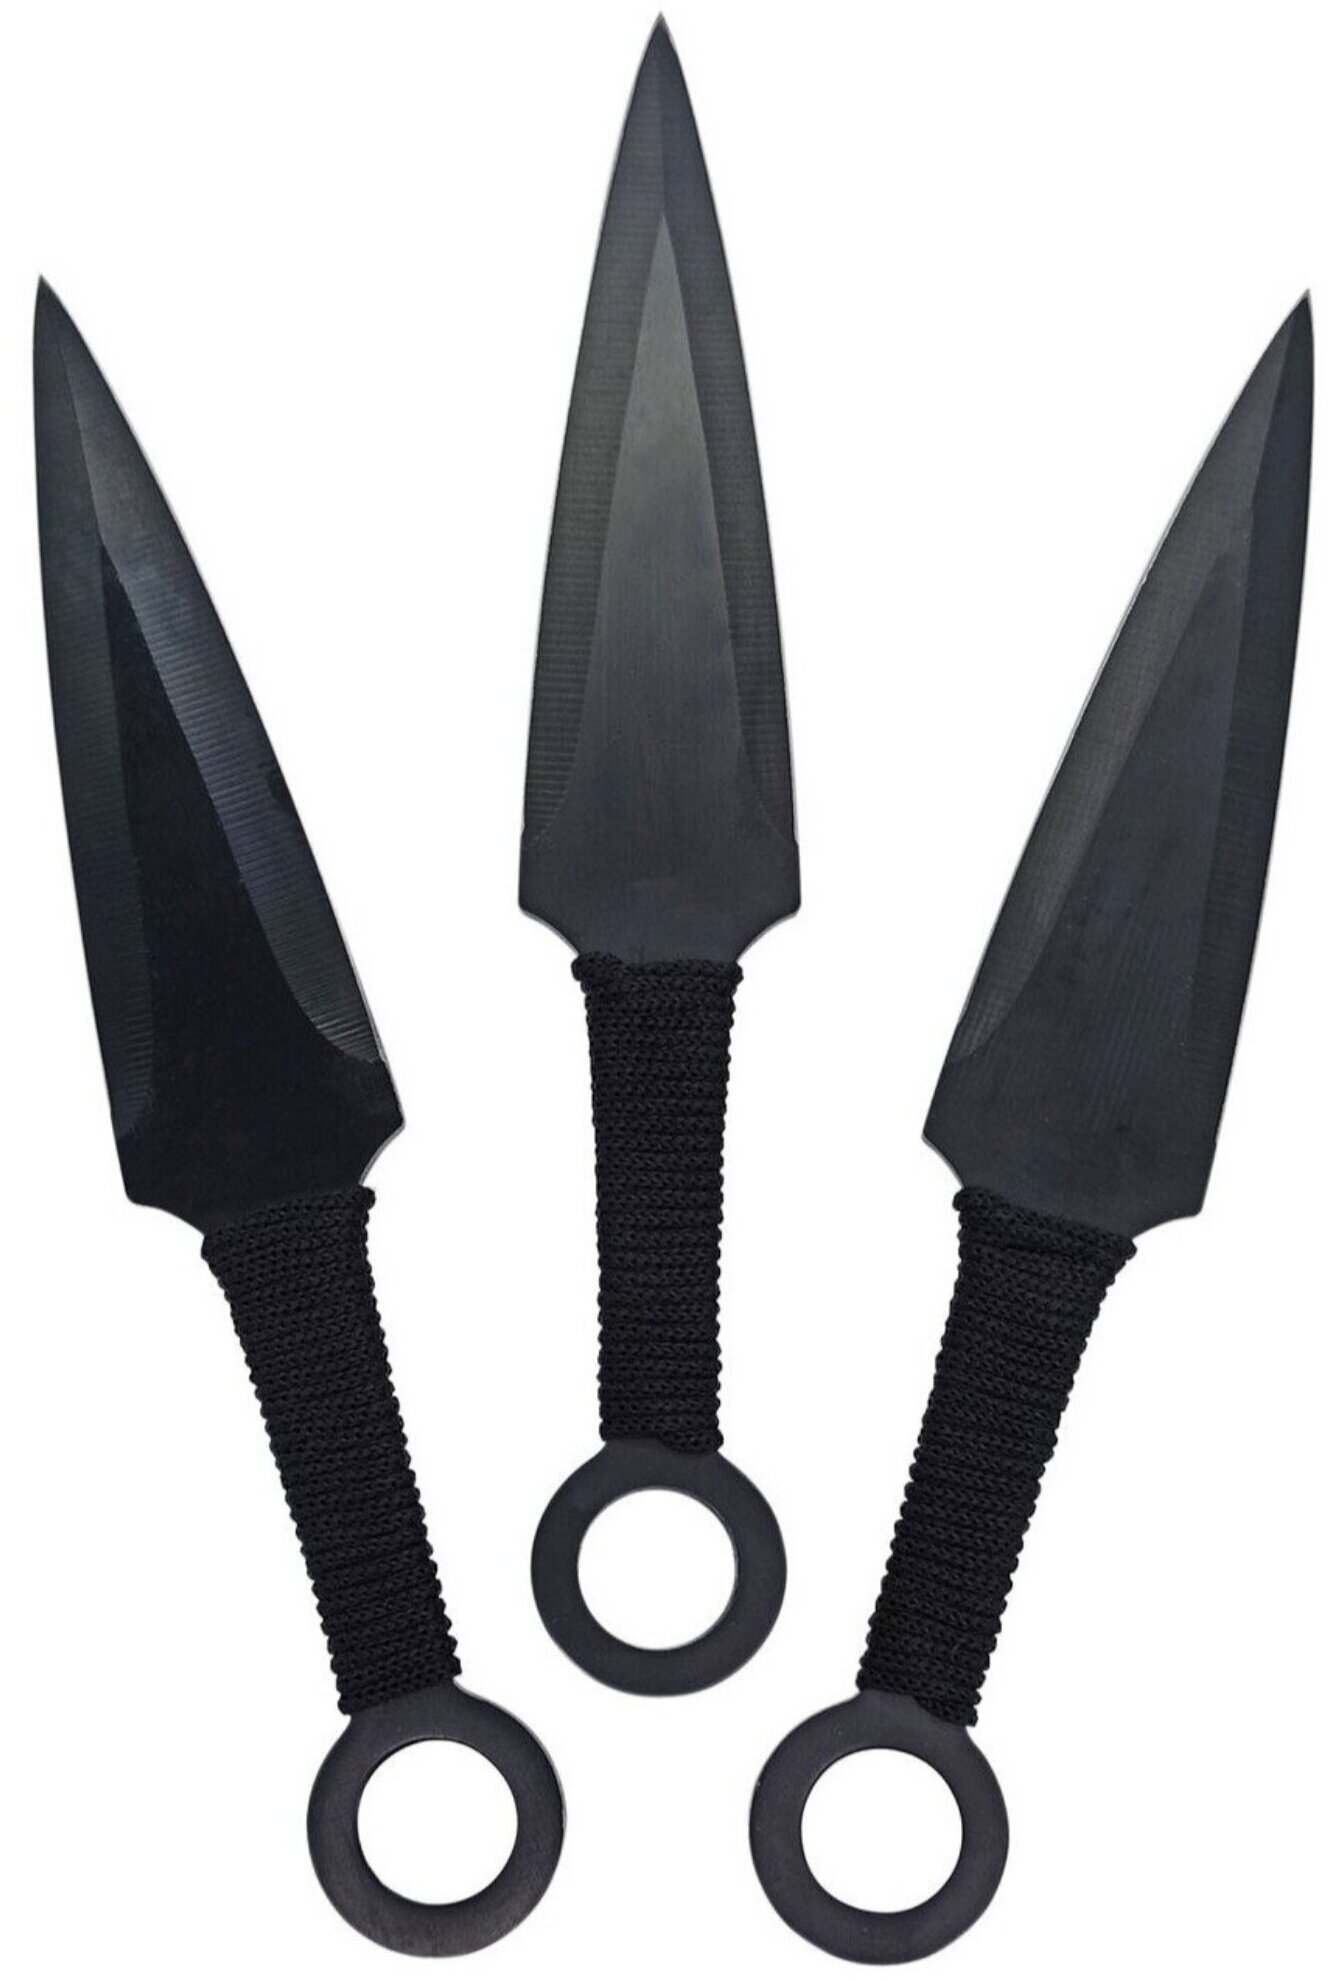 Нож кунай черный в обмотке 23 см (набор 3 штуки в чехле)